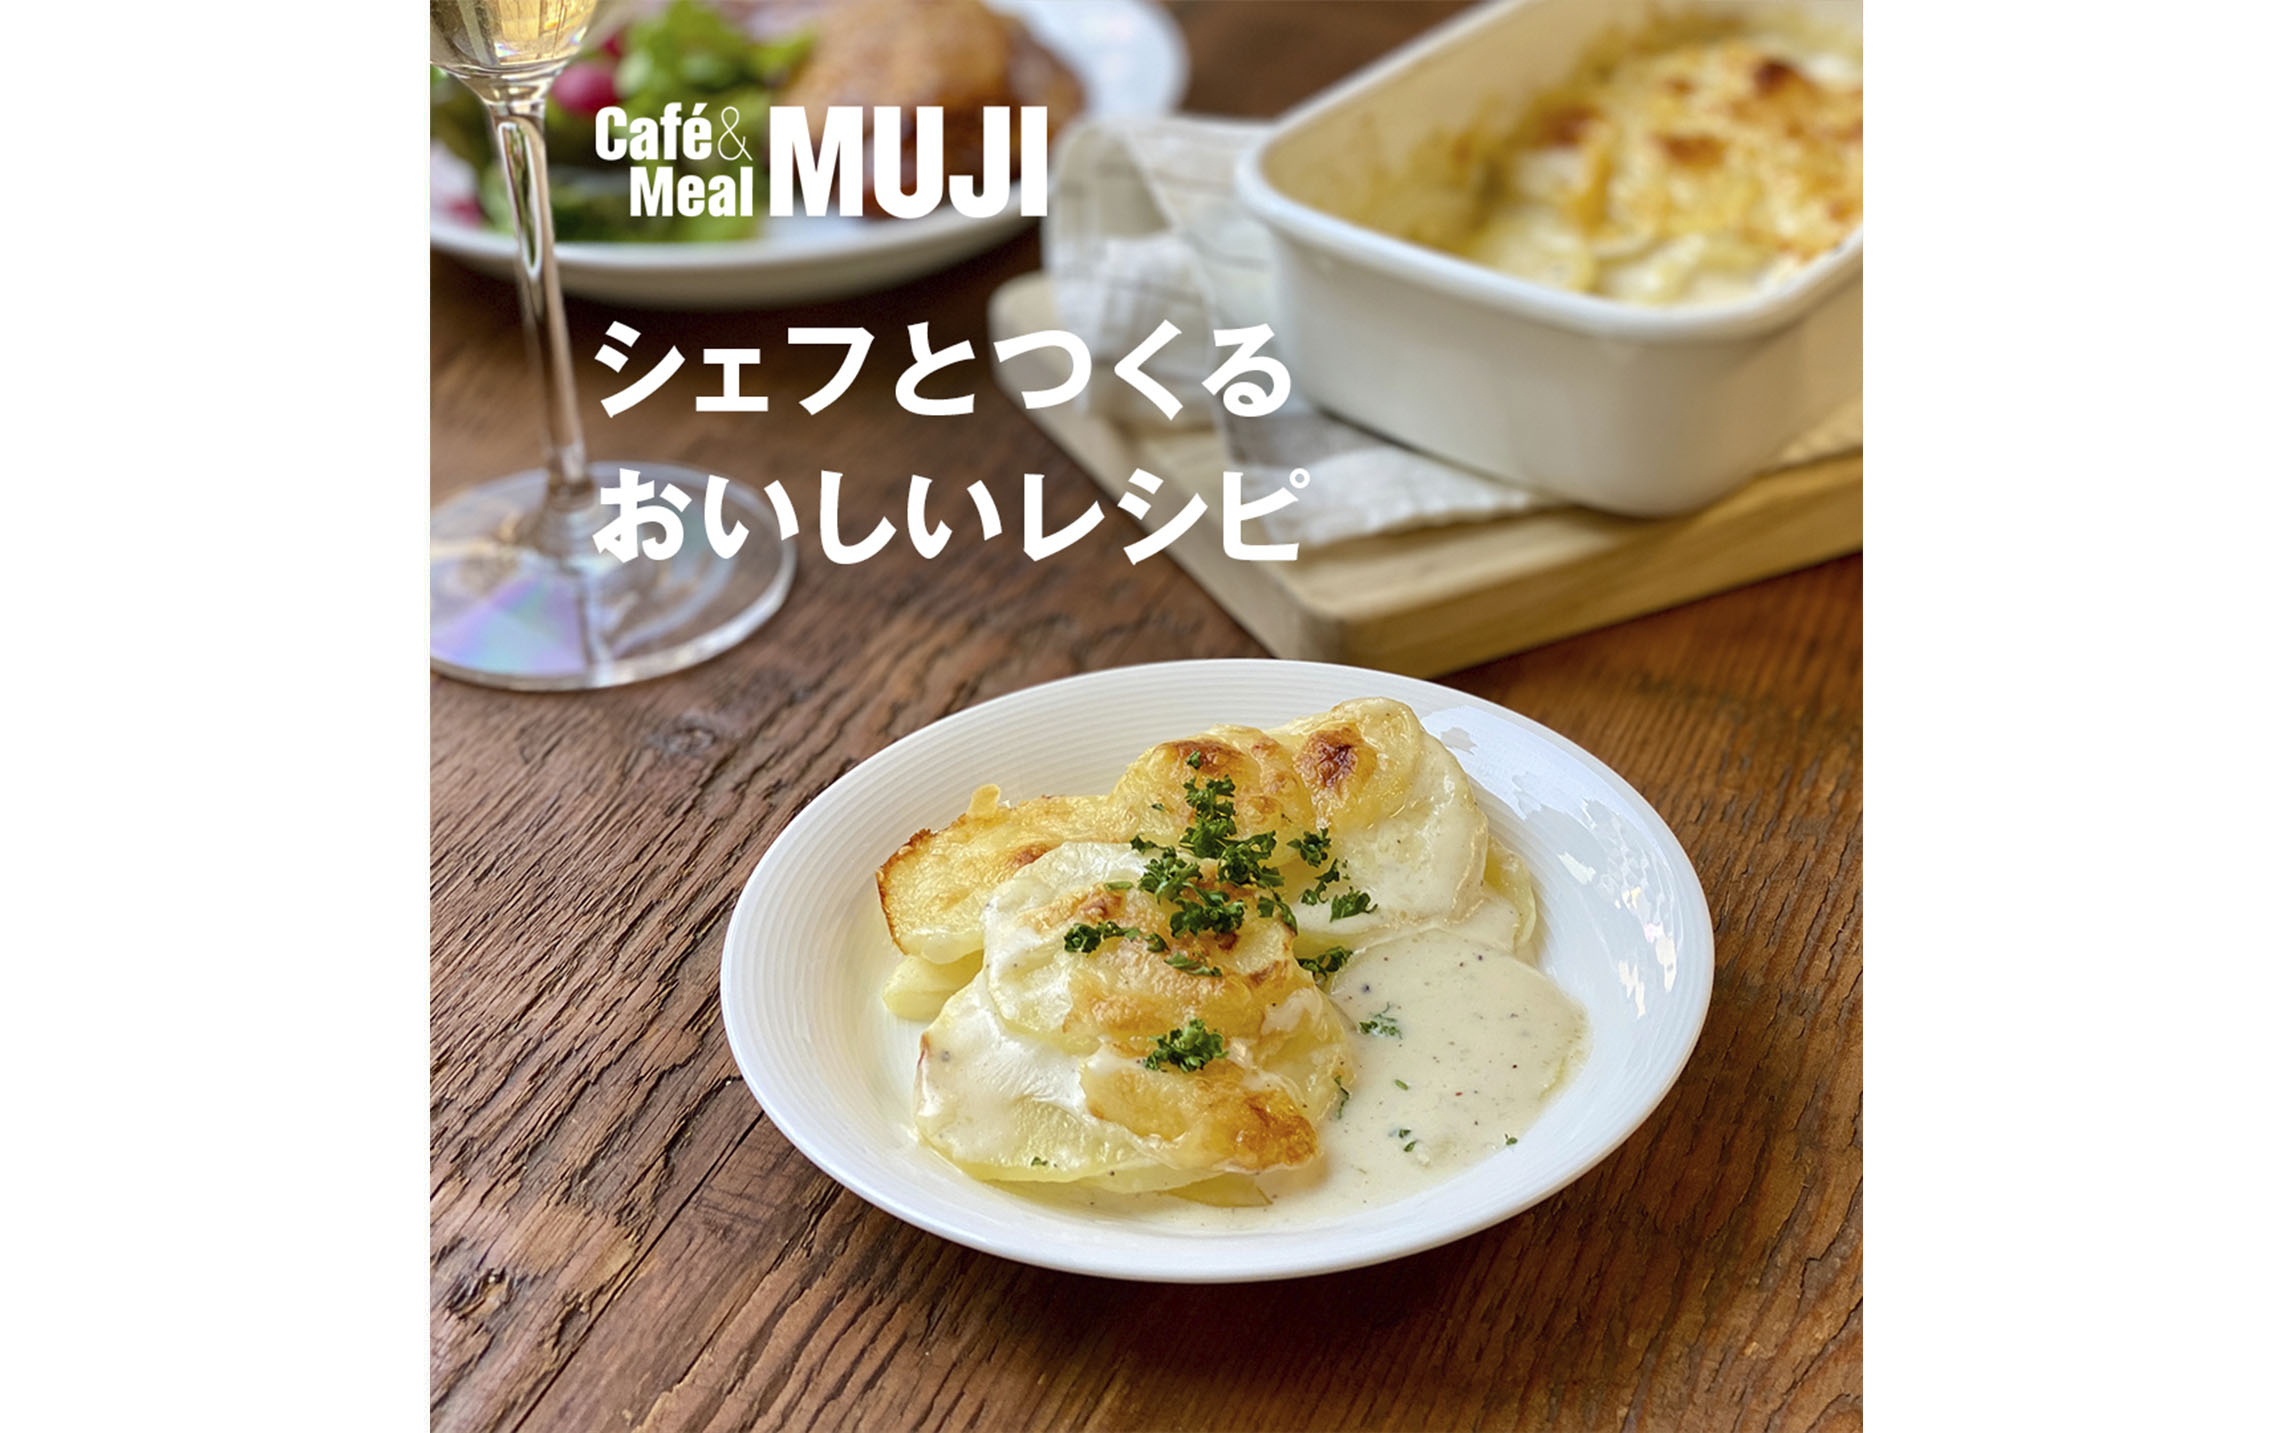 ほくほくポテトグラタン Blog Cafe Meal Muji